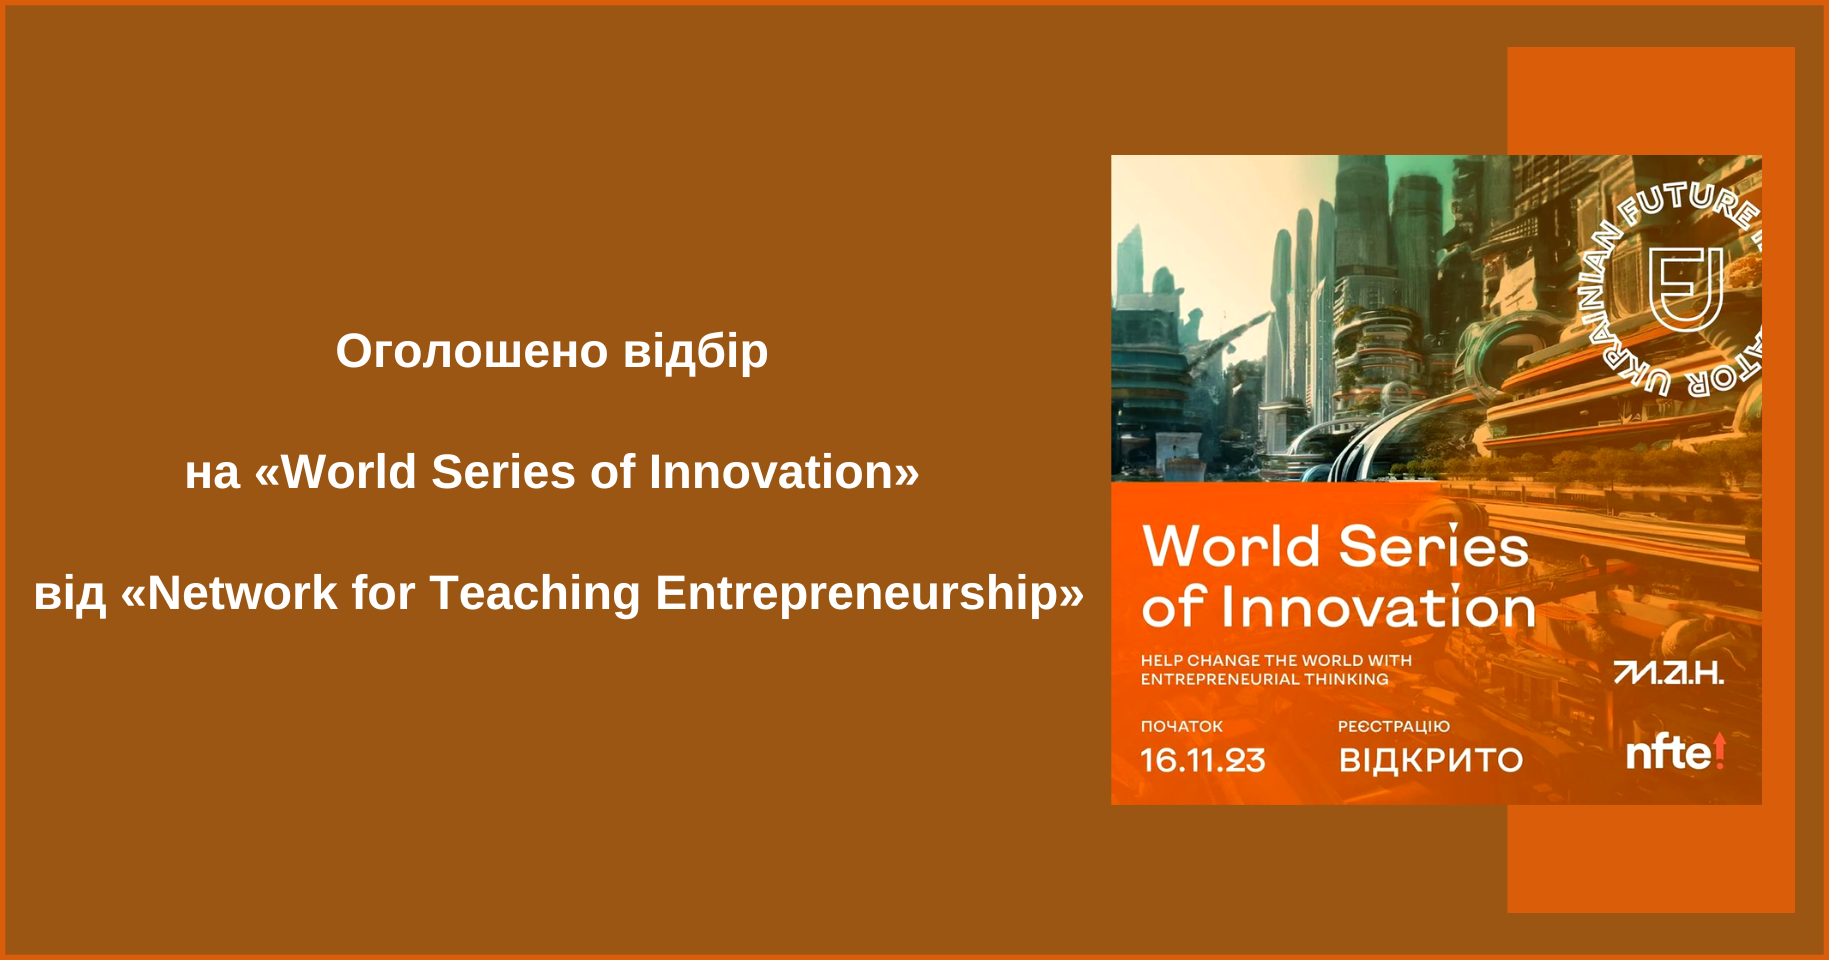 Оголошено відбір на «World Series of Innovation» від «Network for Teaching Entrepreneurship»